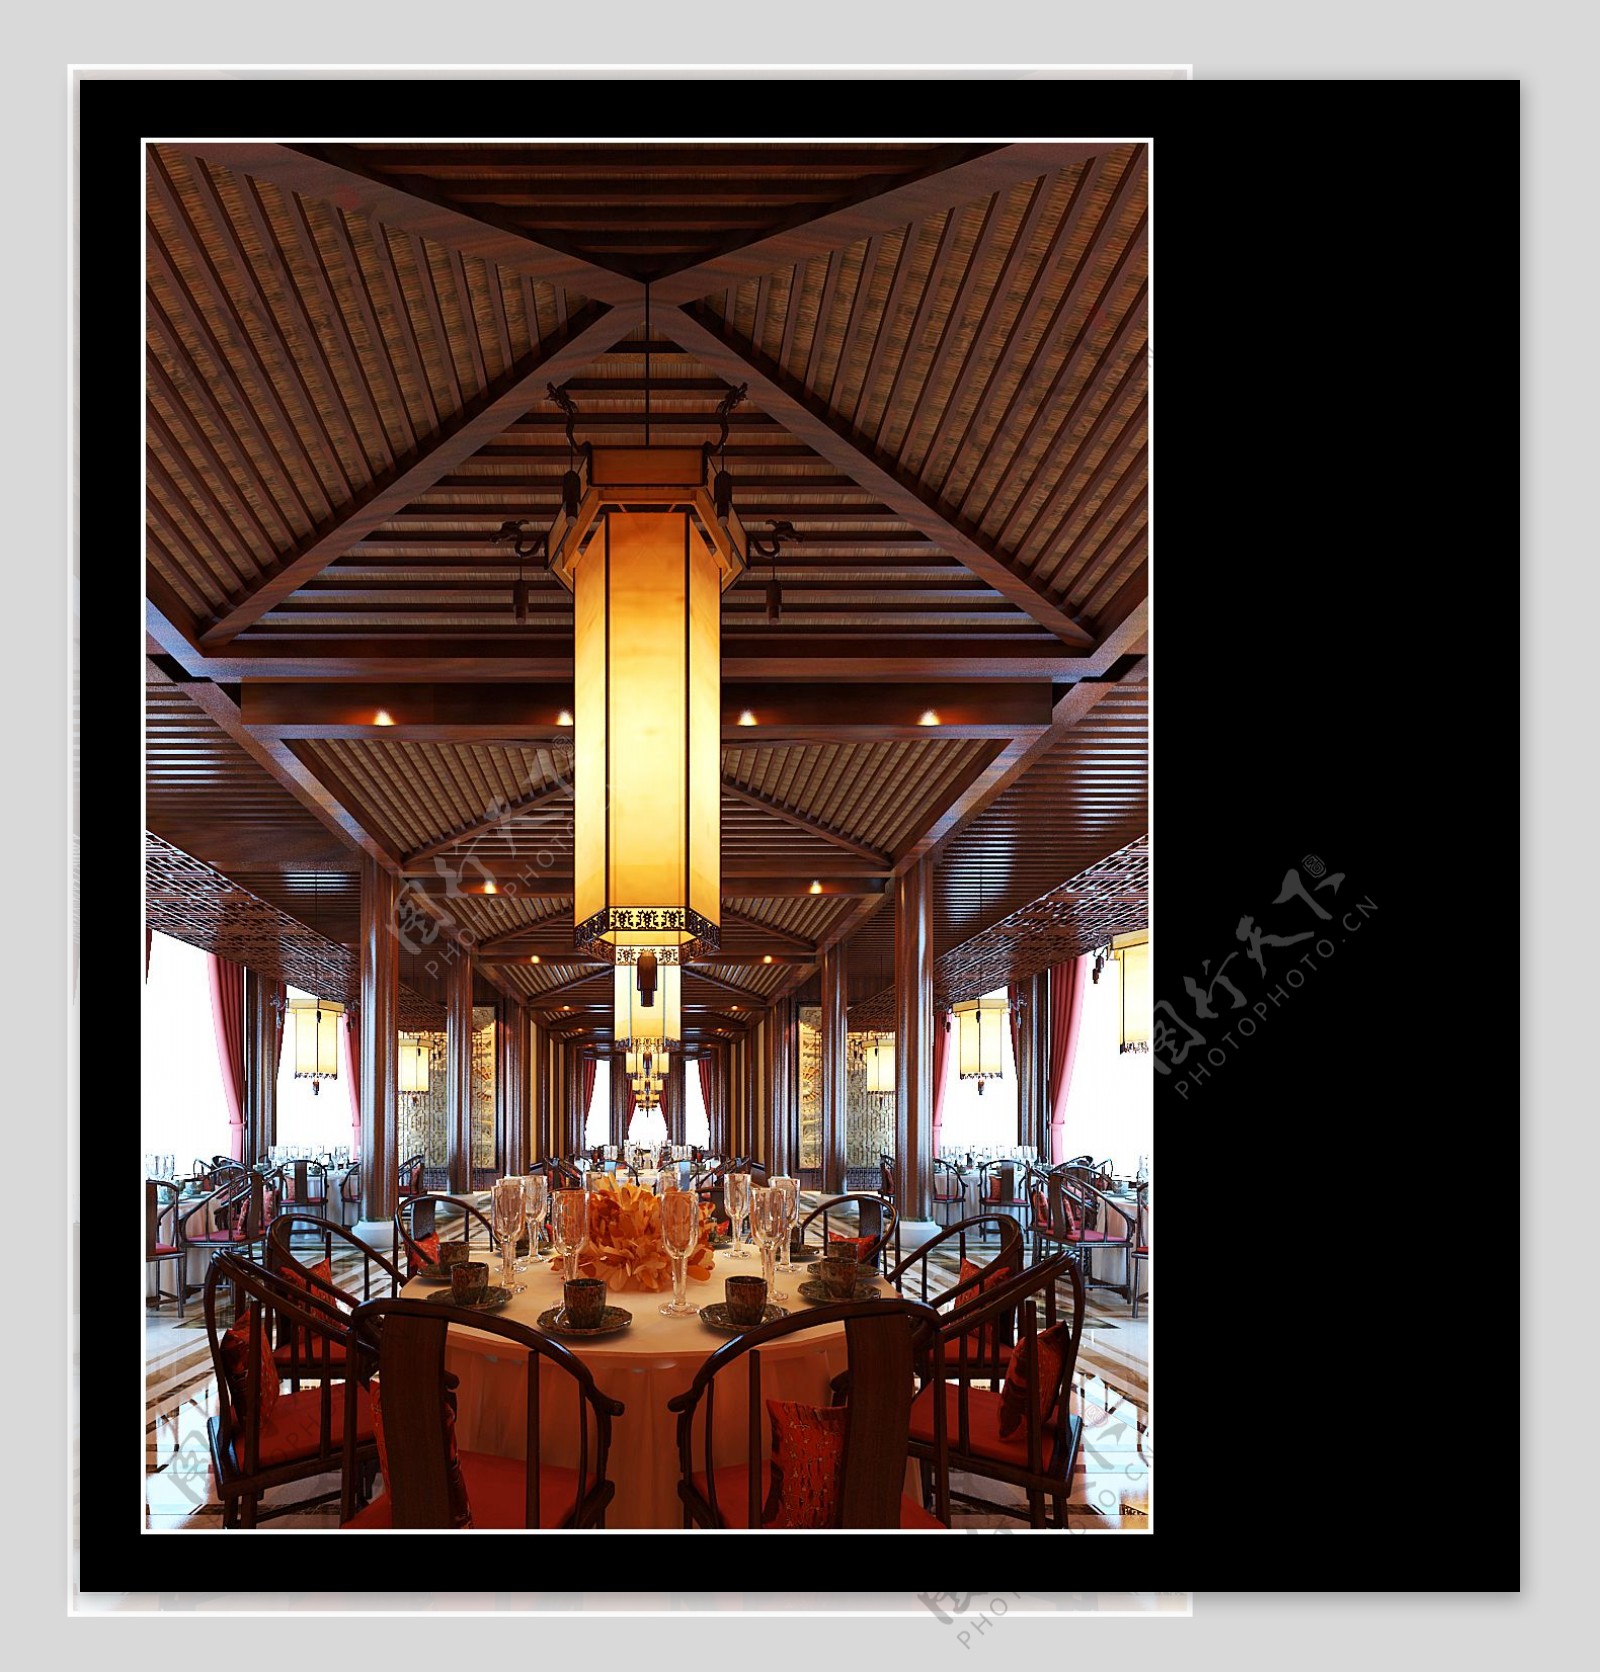 餐厅六角羊皮木艺中式吊灯